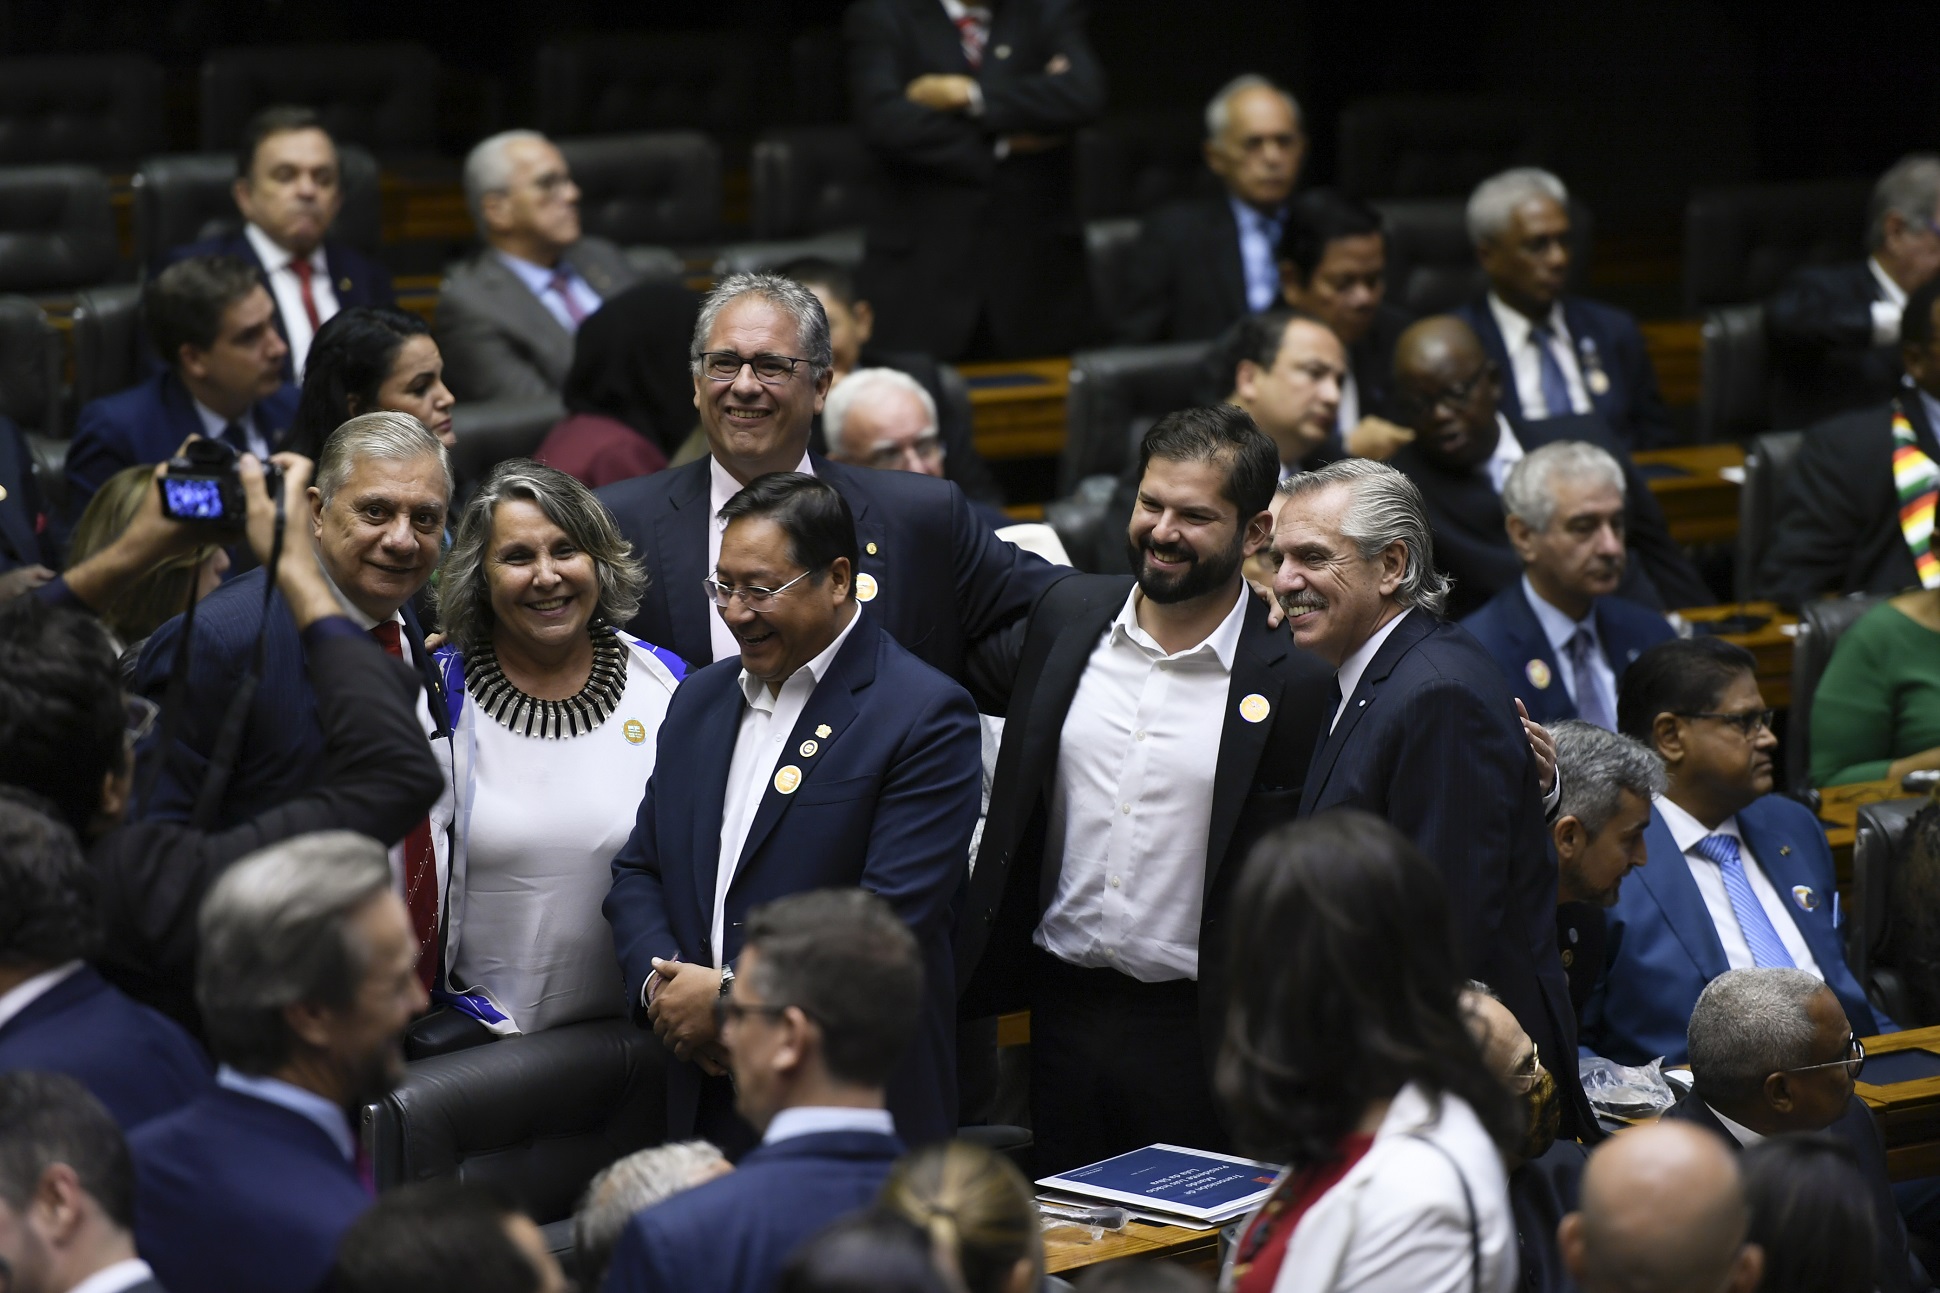 El presidente participó del acto de jura de Lula en el Congreso nacional de Brasil